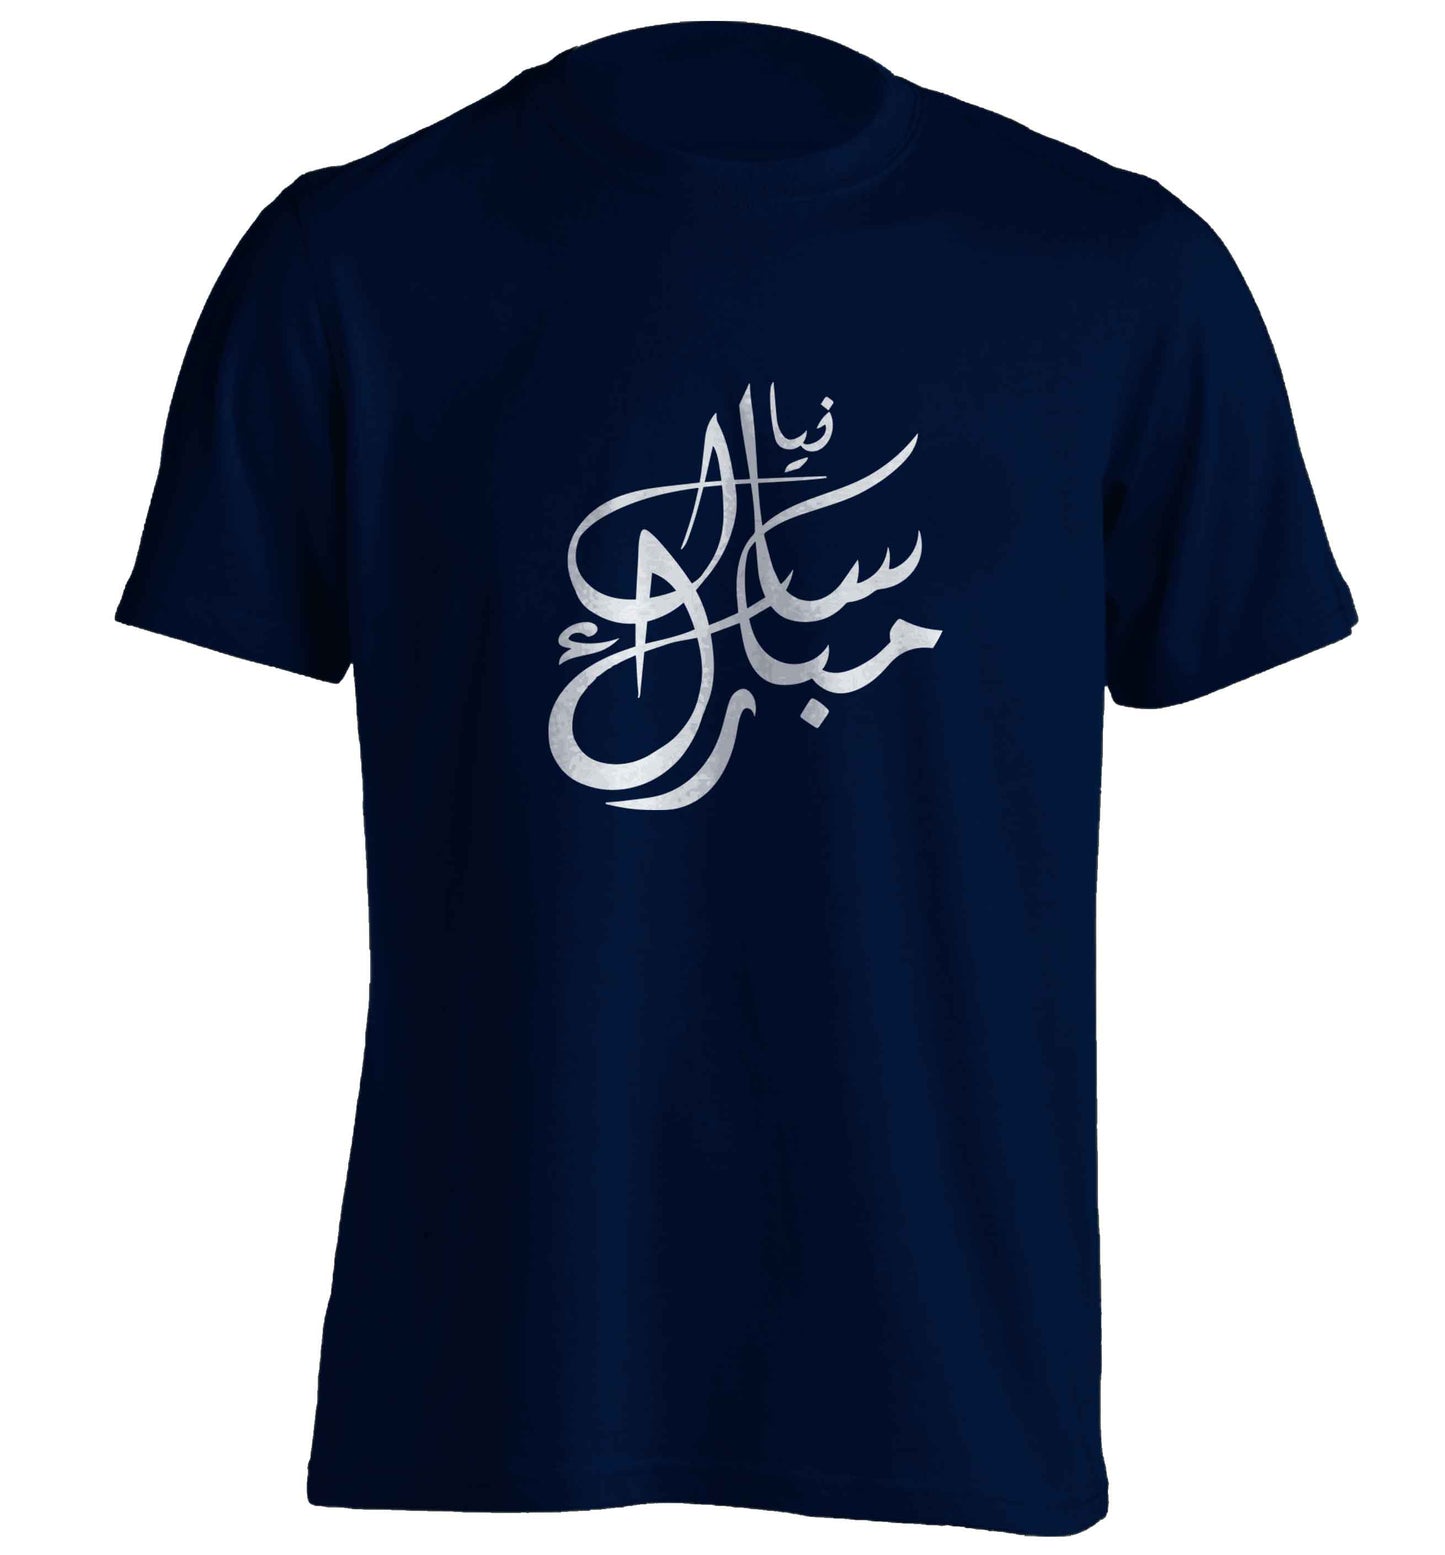 Urdu Naya saal mubarak adults unisex navy Tshirt 2XL